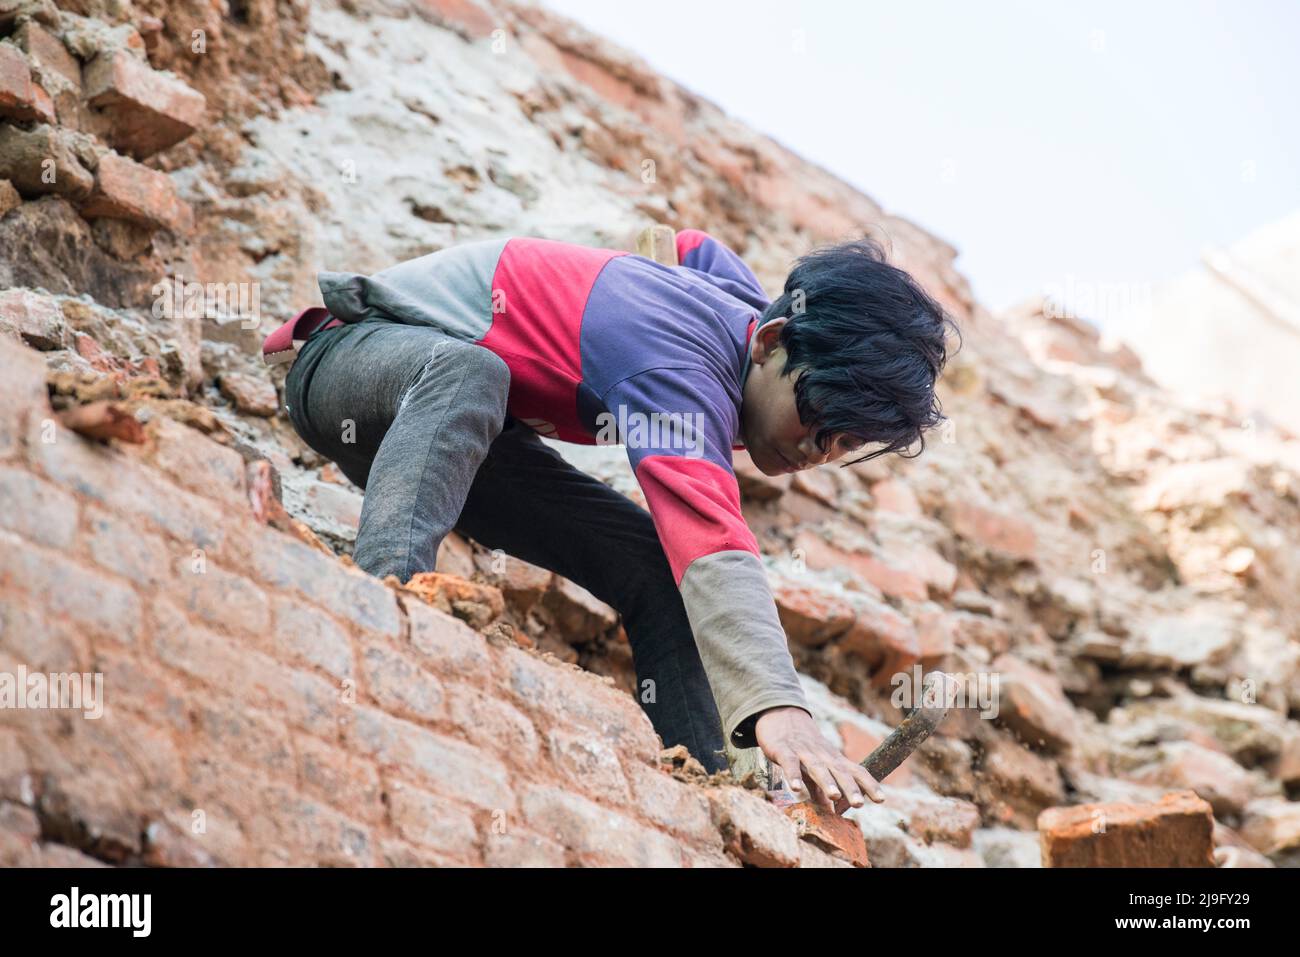 Kathmandu, Nepal- April 20,2022 : Menschen jeden Alters und Geschlechts arbeiten bei einem großen Erdbeben in Kathmandu daran, die zerstörte Altstadt wieder aufzubauen. Stockfoto